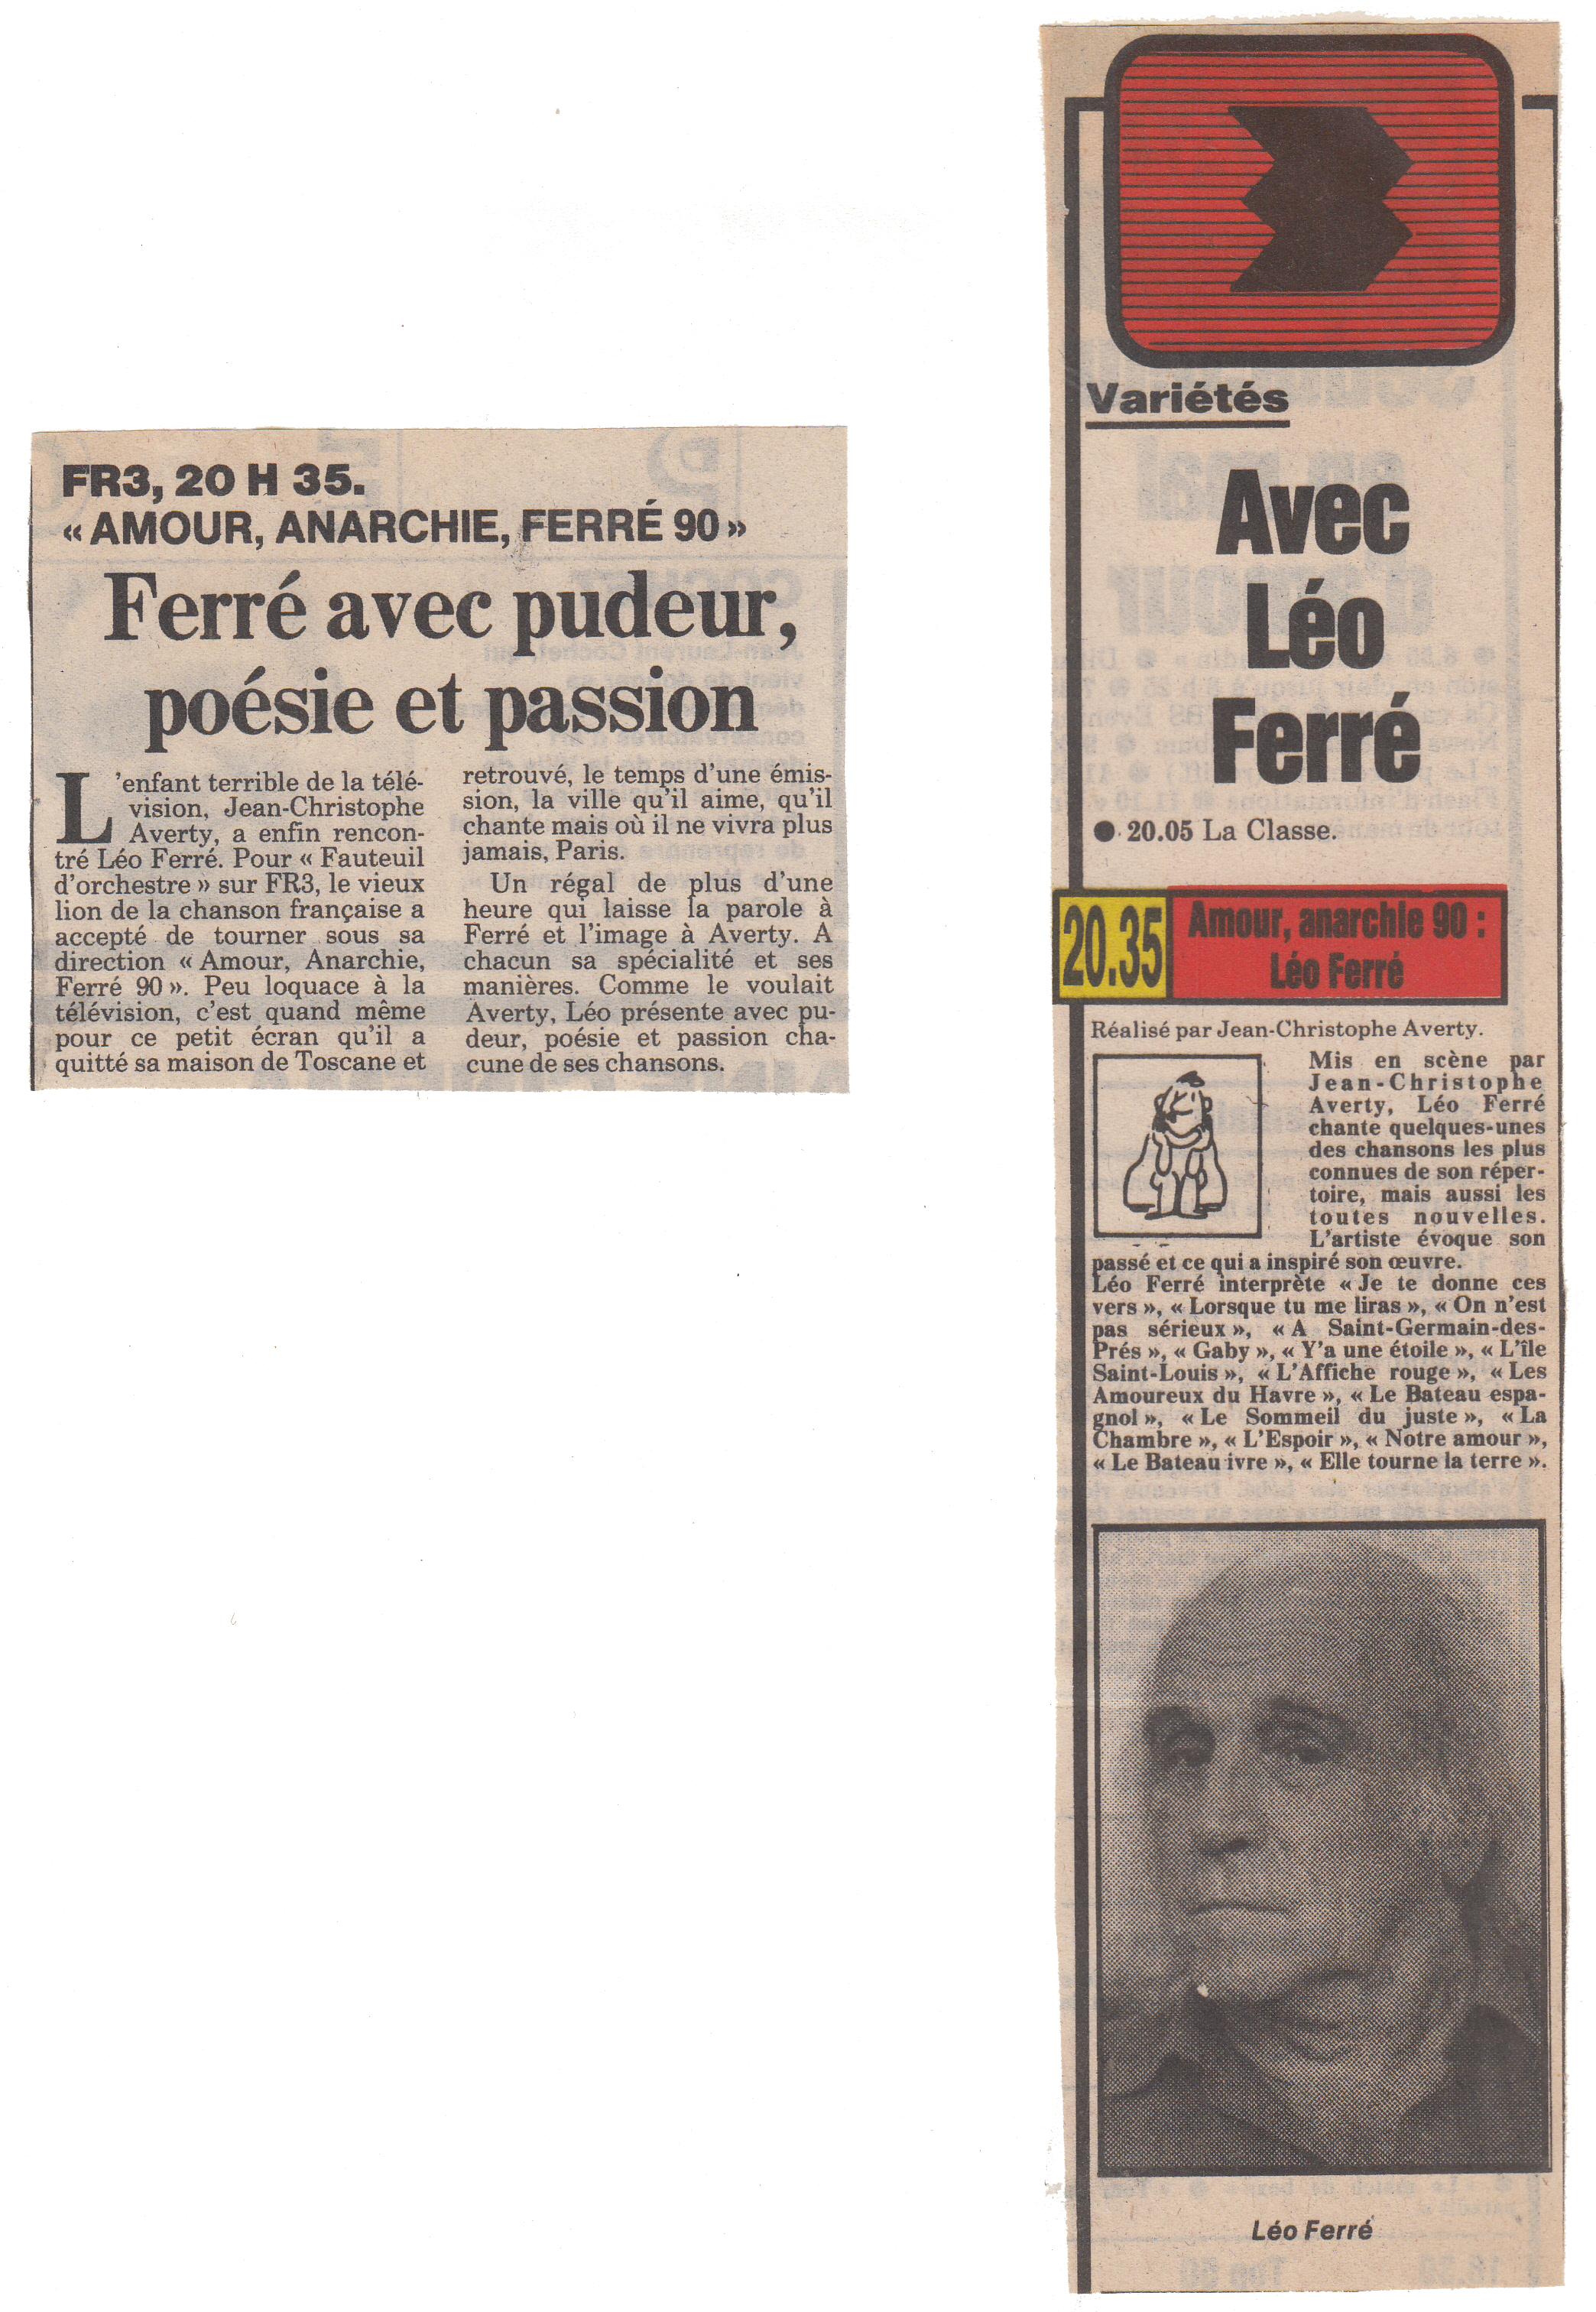 Léo Ferré - France-Soir du 11/04/1990